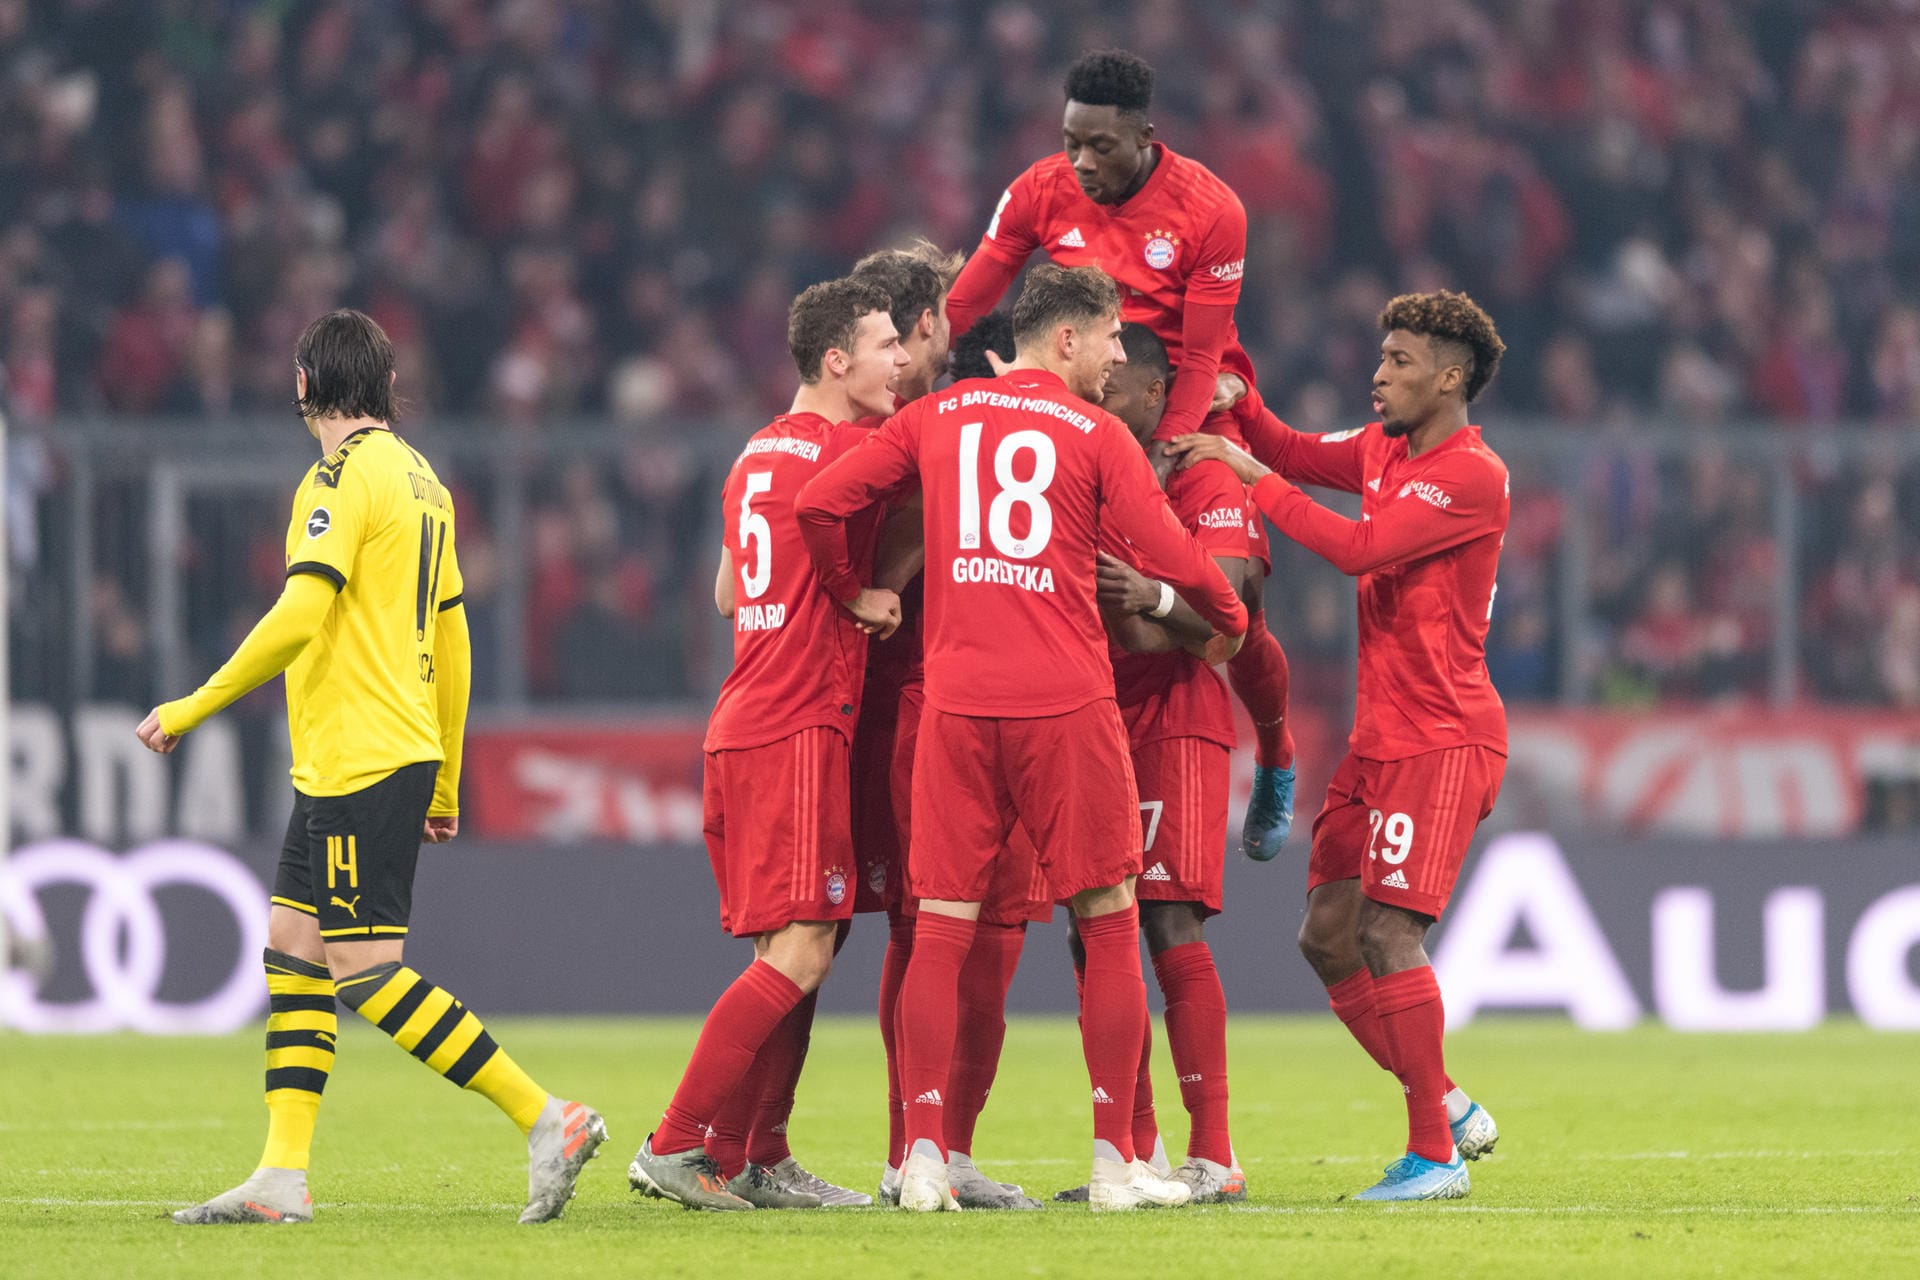 Der 28. Spieltag wartet mit dem Kracher Borussia Dortmund gegen Bayern München auf. Hinrunden-Ergebnis: Ein klares 4:0 für die Münchner.